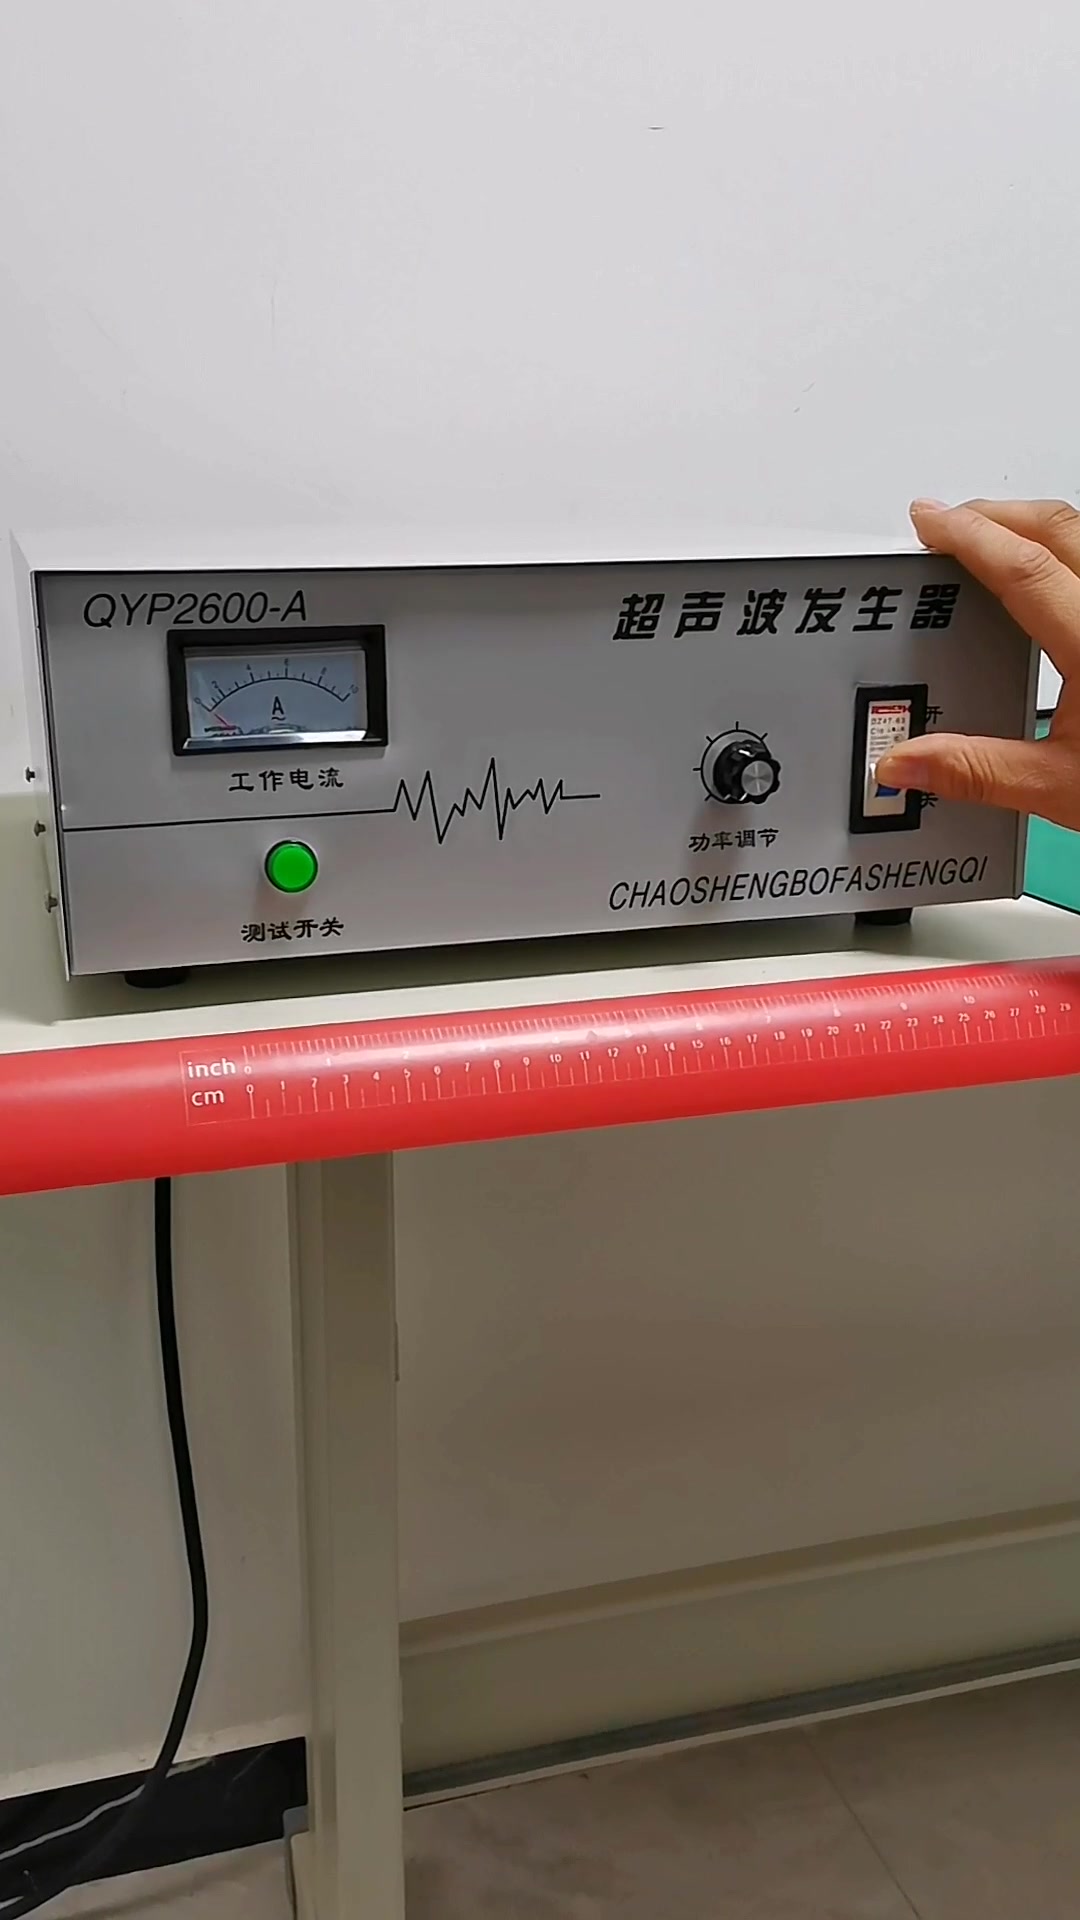 实测超声波清洗机在超声波发生器的驱动下轻松击穿锡纸铝箔纸-帖子图片